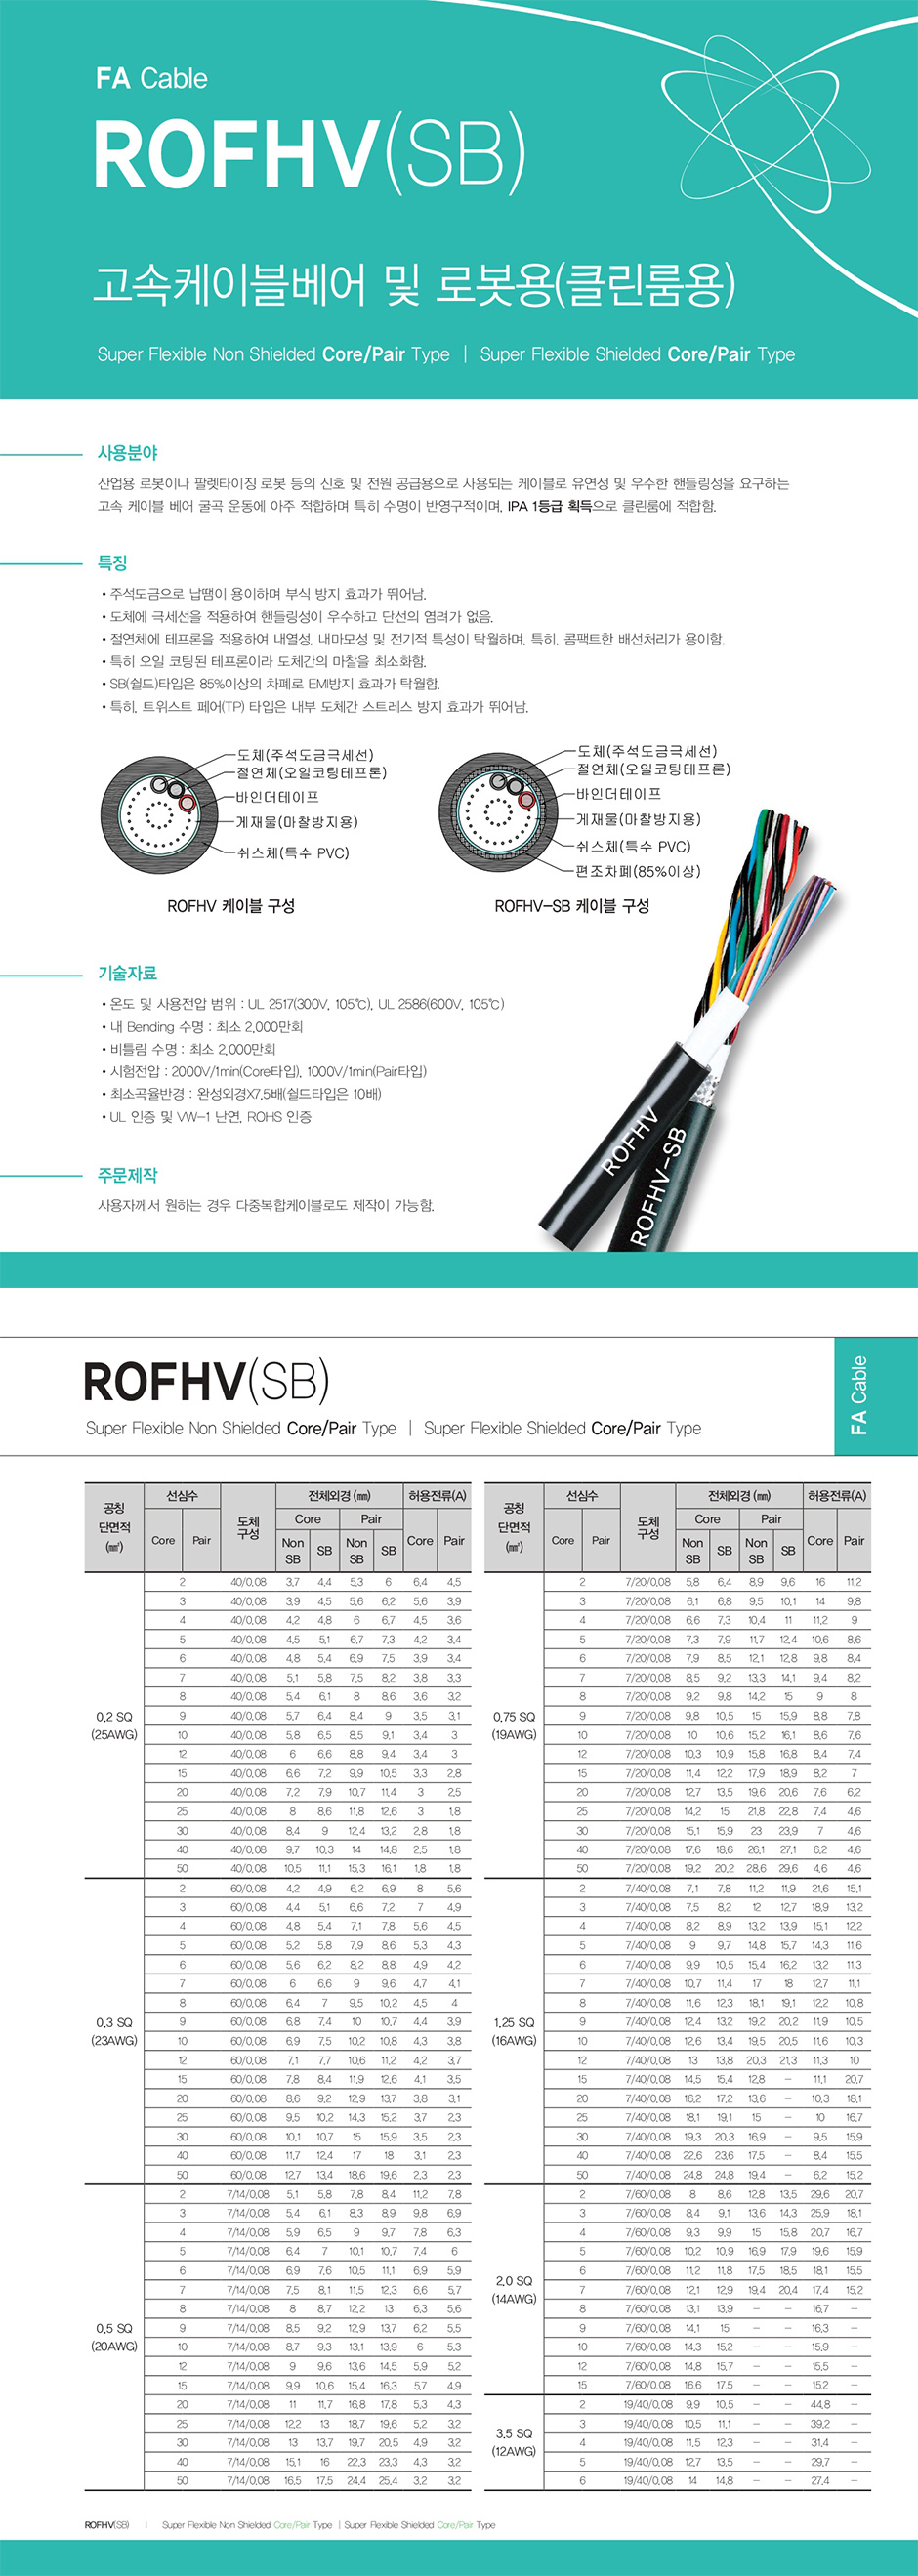 FA Cable : ROFHV(SB)